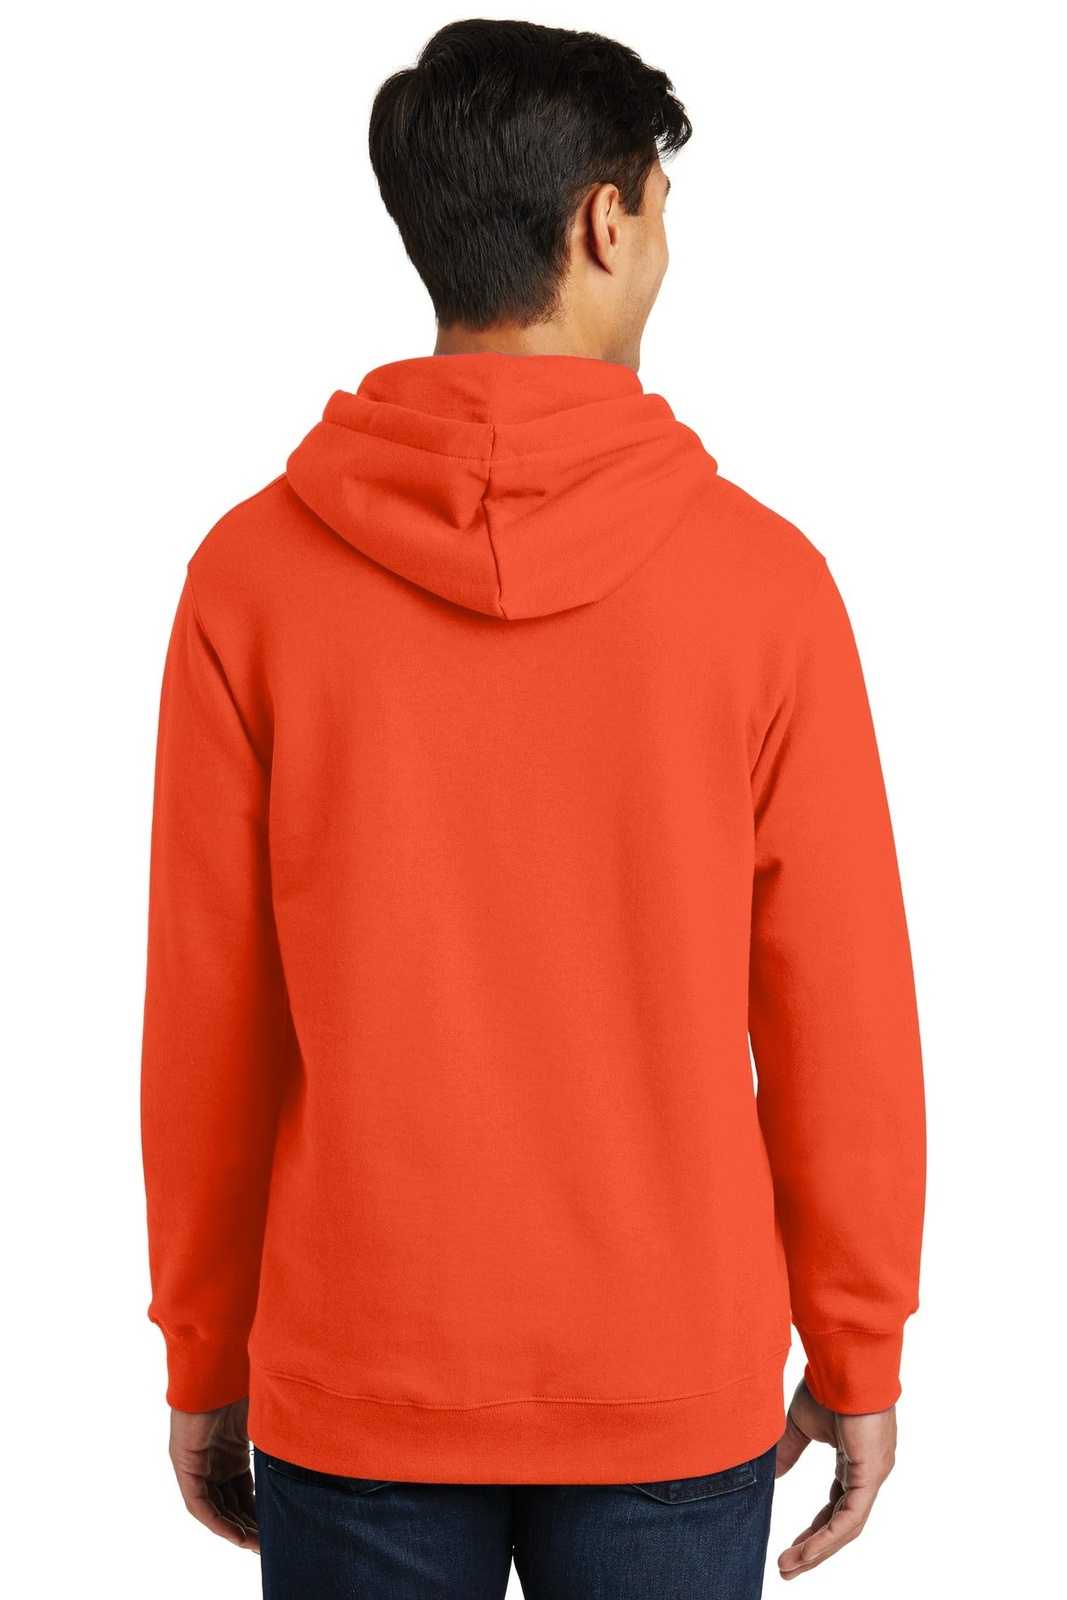 Port &amp; Company PC850H Fan Favorite Fleece Pullover Hooded Sweatshirt - Orange - HIT a Double - 2